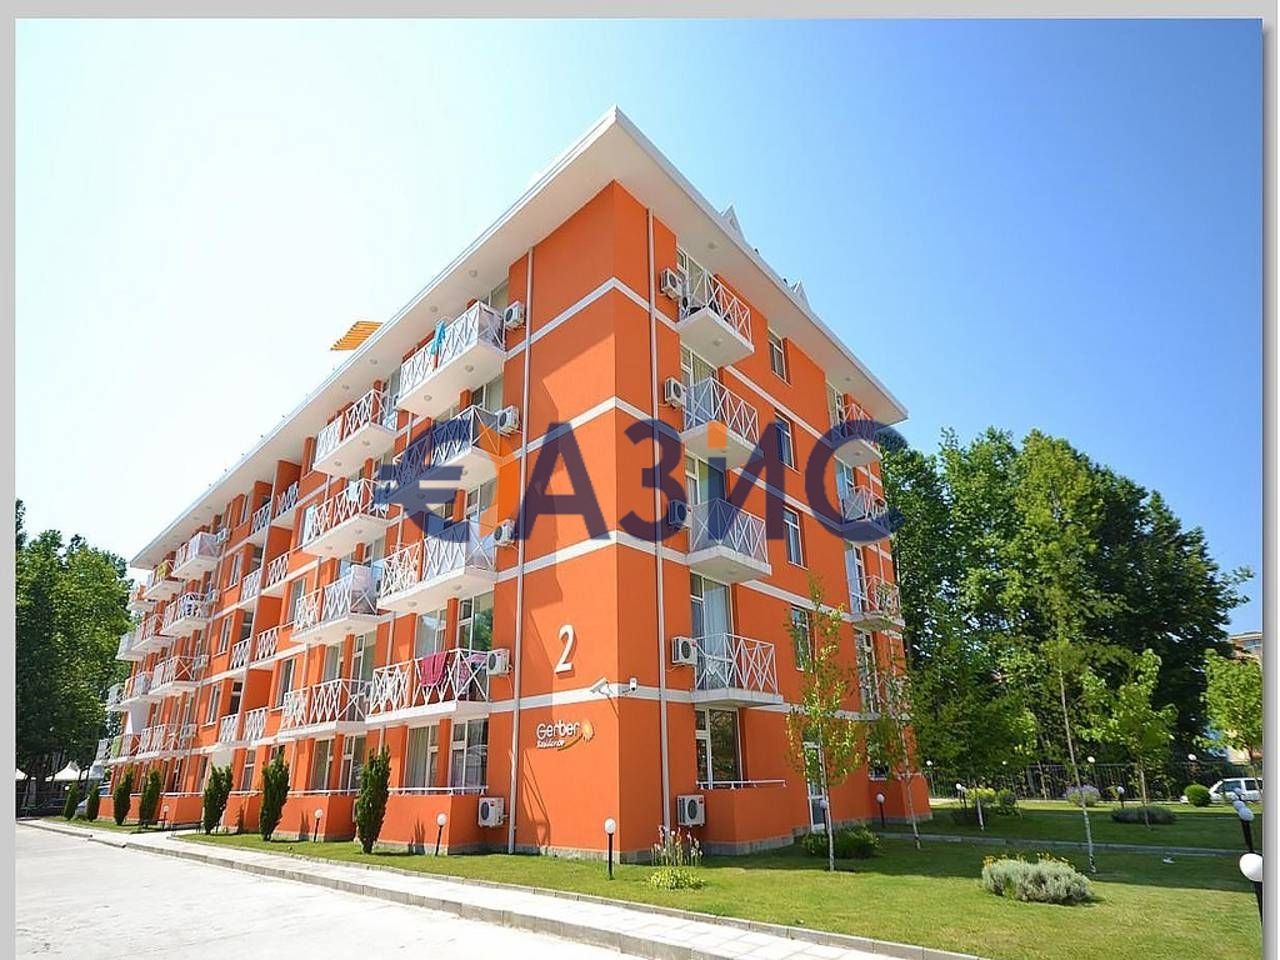 Apartment at Sunny Beach, Bulgaria, 32 sq.m - picture 1